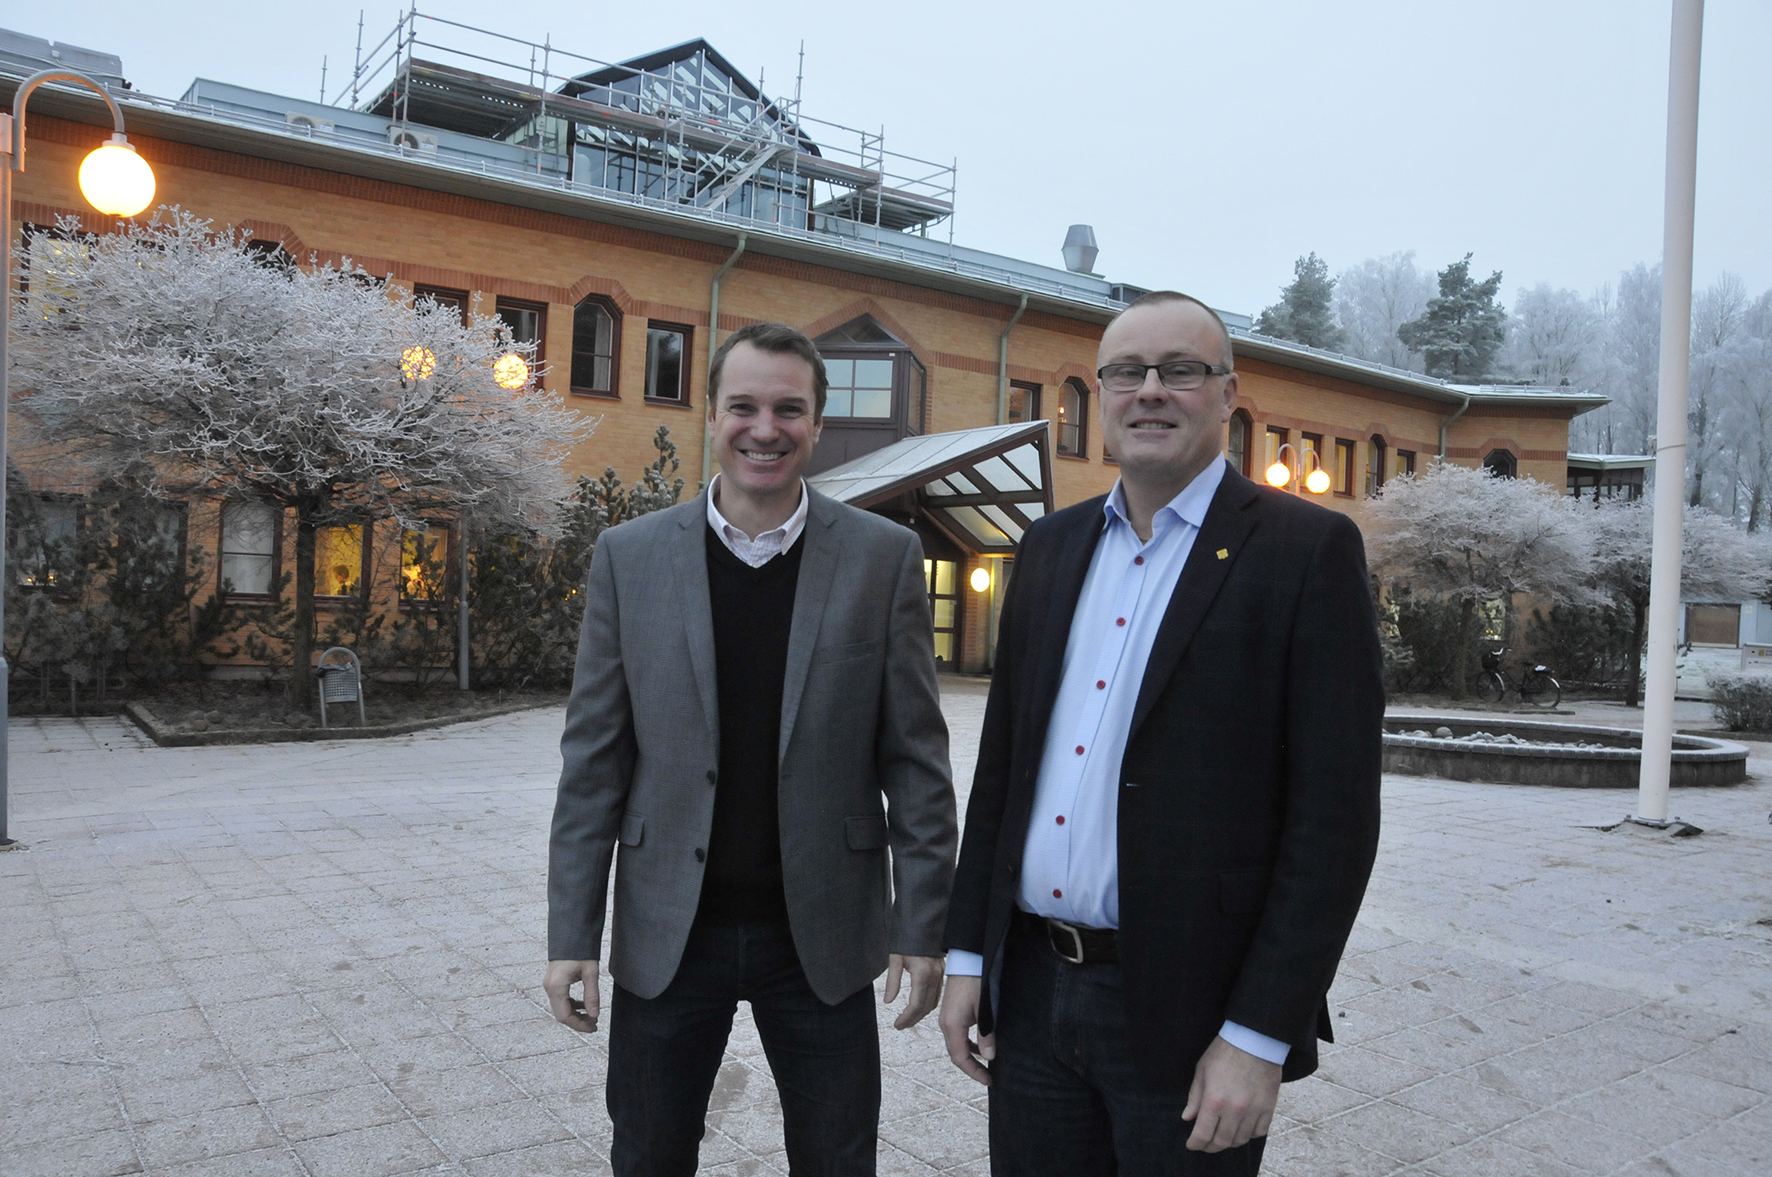 Kommunalråd Hans Jildesten är mycket nöjd med rekryteringen av Mats Öhman som Storfors nye kommunchef.